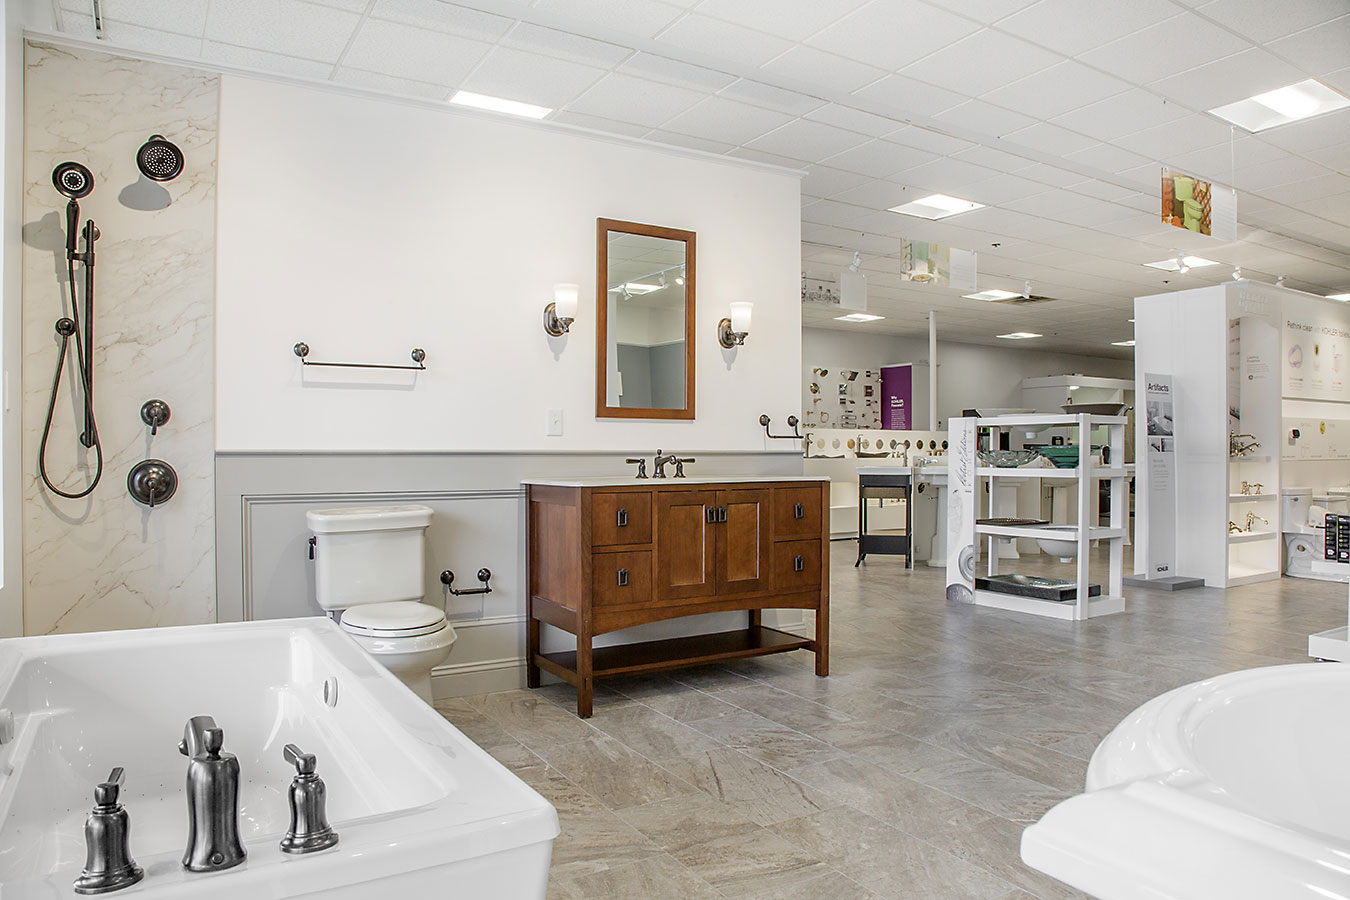 bath and kitchen showroom toronto on